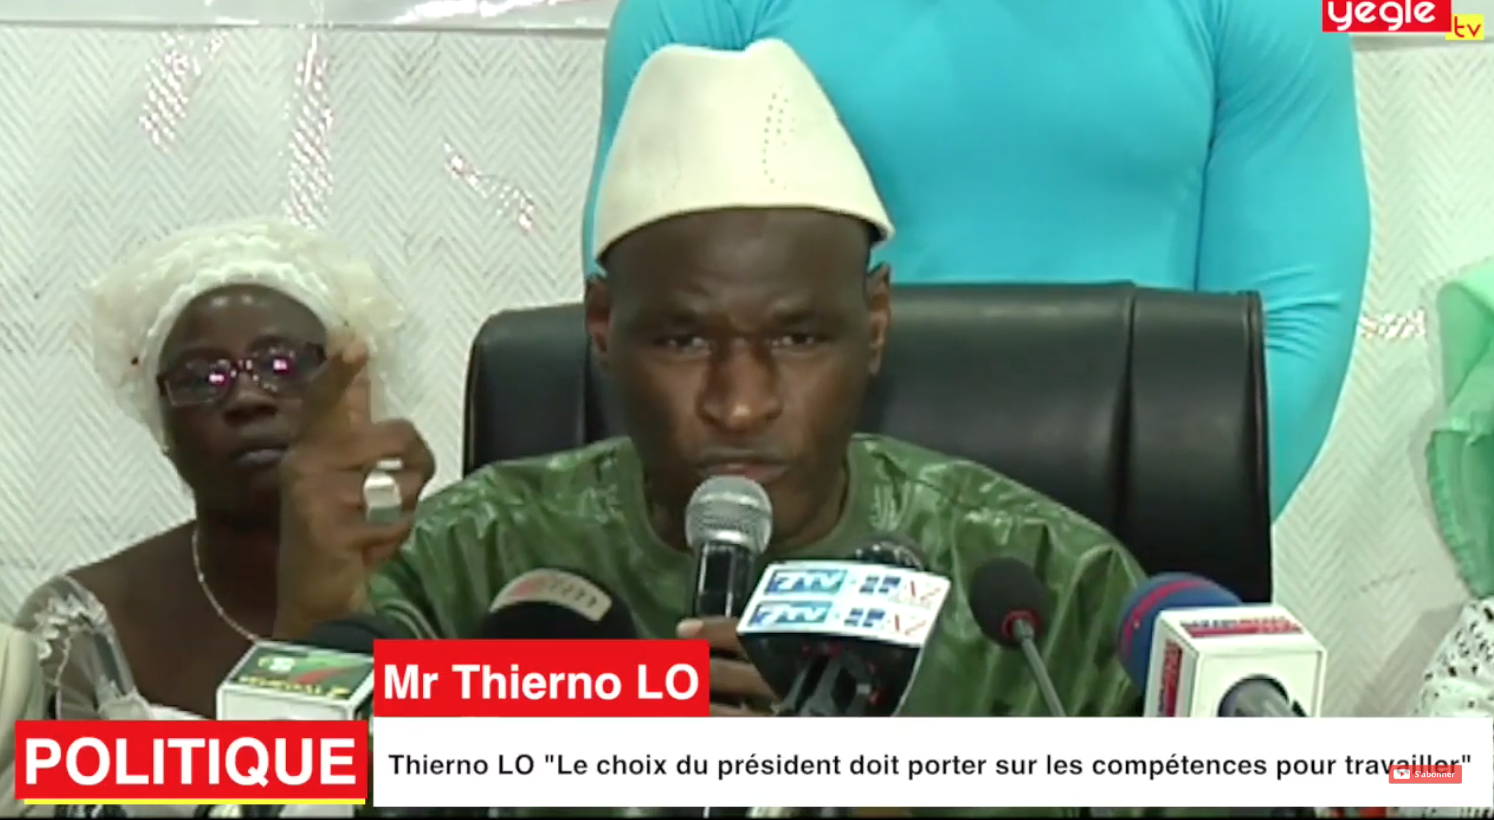 Thierno LO "Le choix du président doit porter sur les compétences pour travailler"